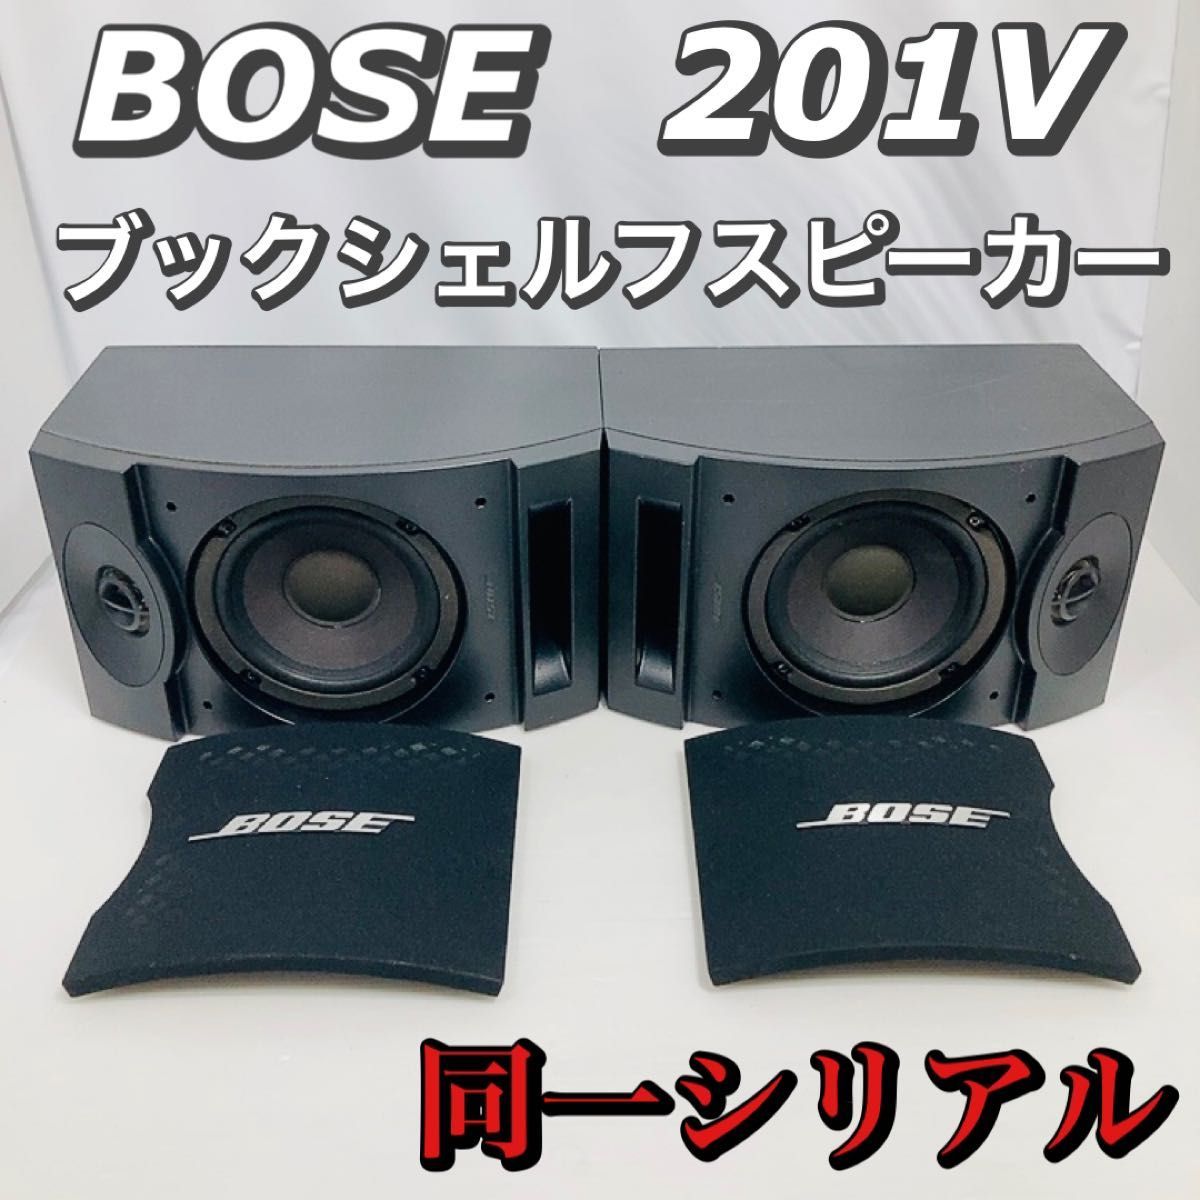 BOSE ボーズ スピーカーシステム[正規/並行輸入品]スピーカー 201V 2本